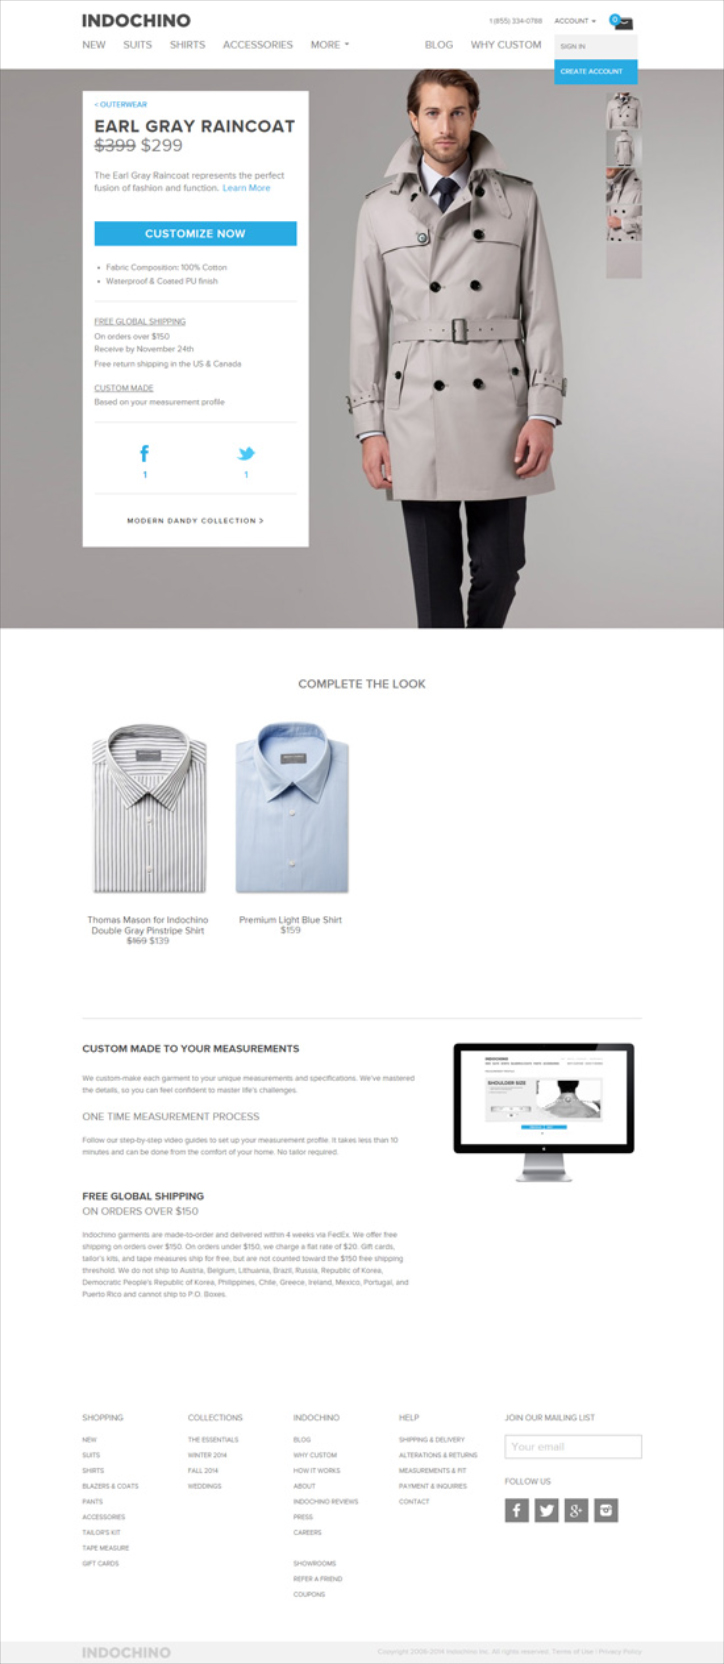 eticaret sitelerinde ürün sayfası tasarımı örnekleri